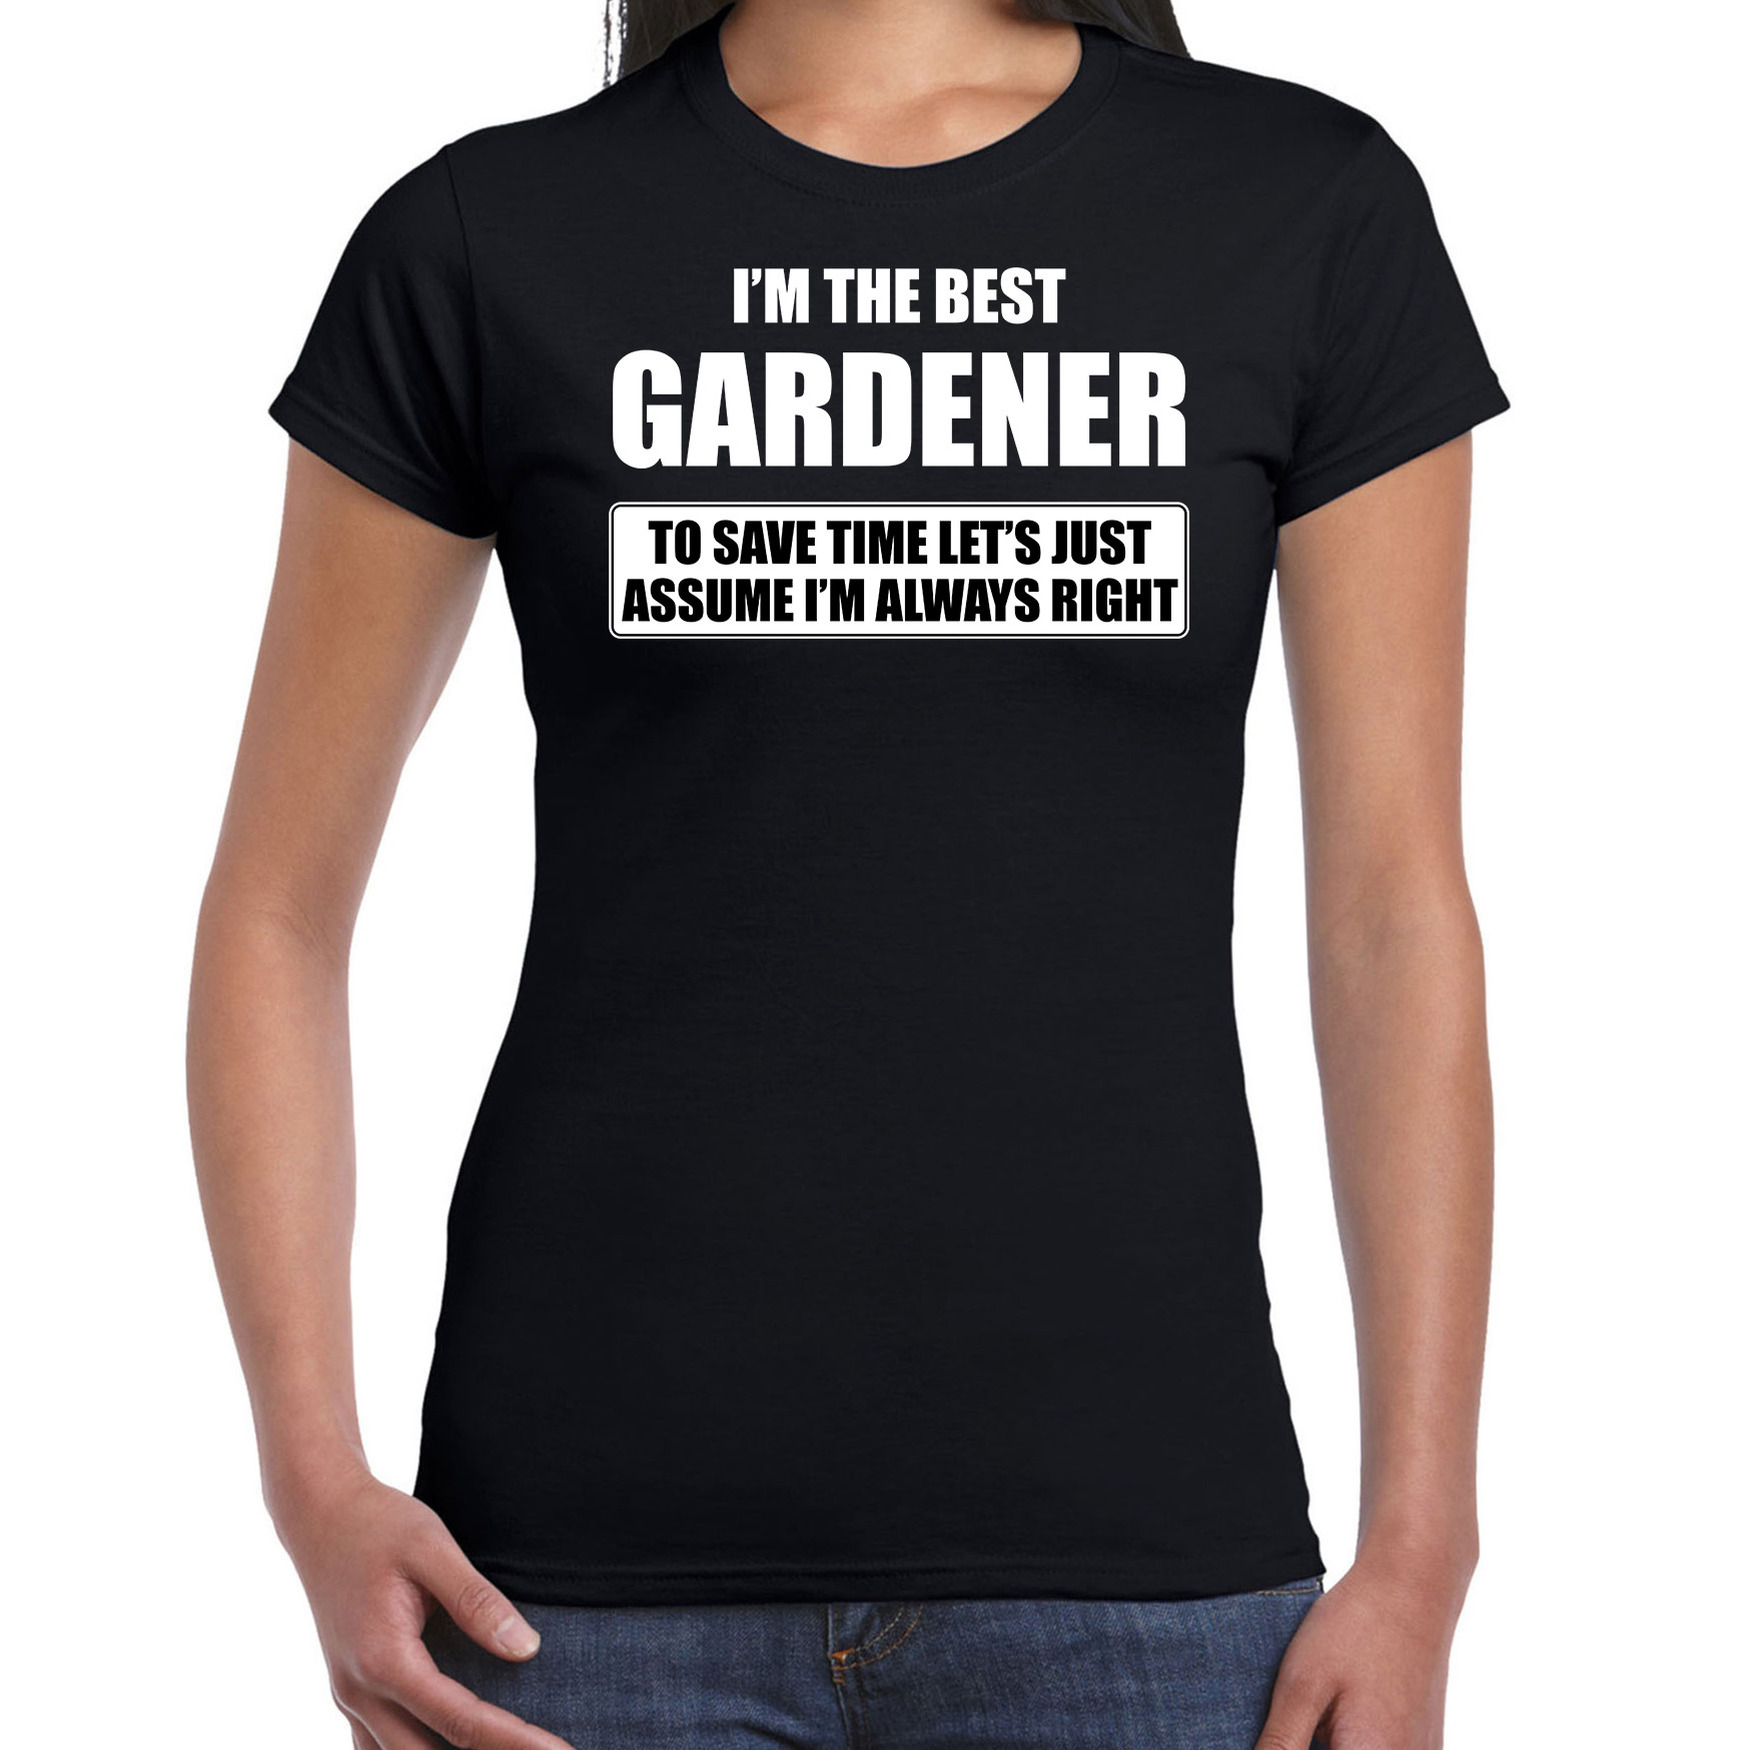 I'm the best gardener t-shirt zwart dames De beste tuinier cadeau